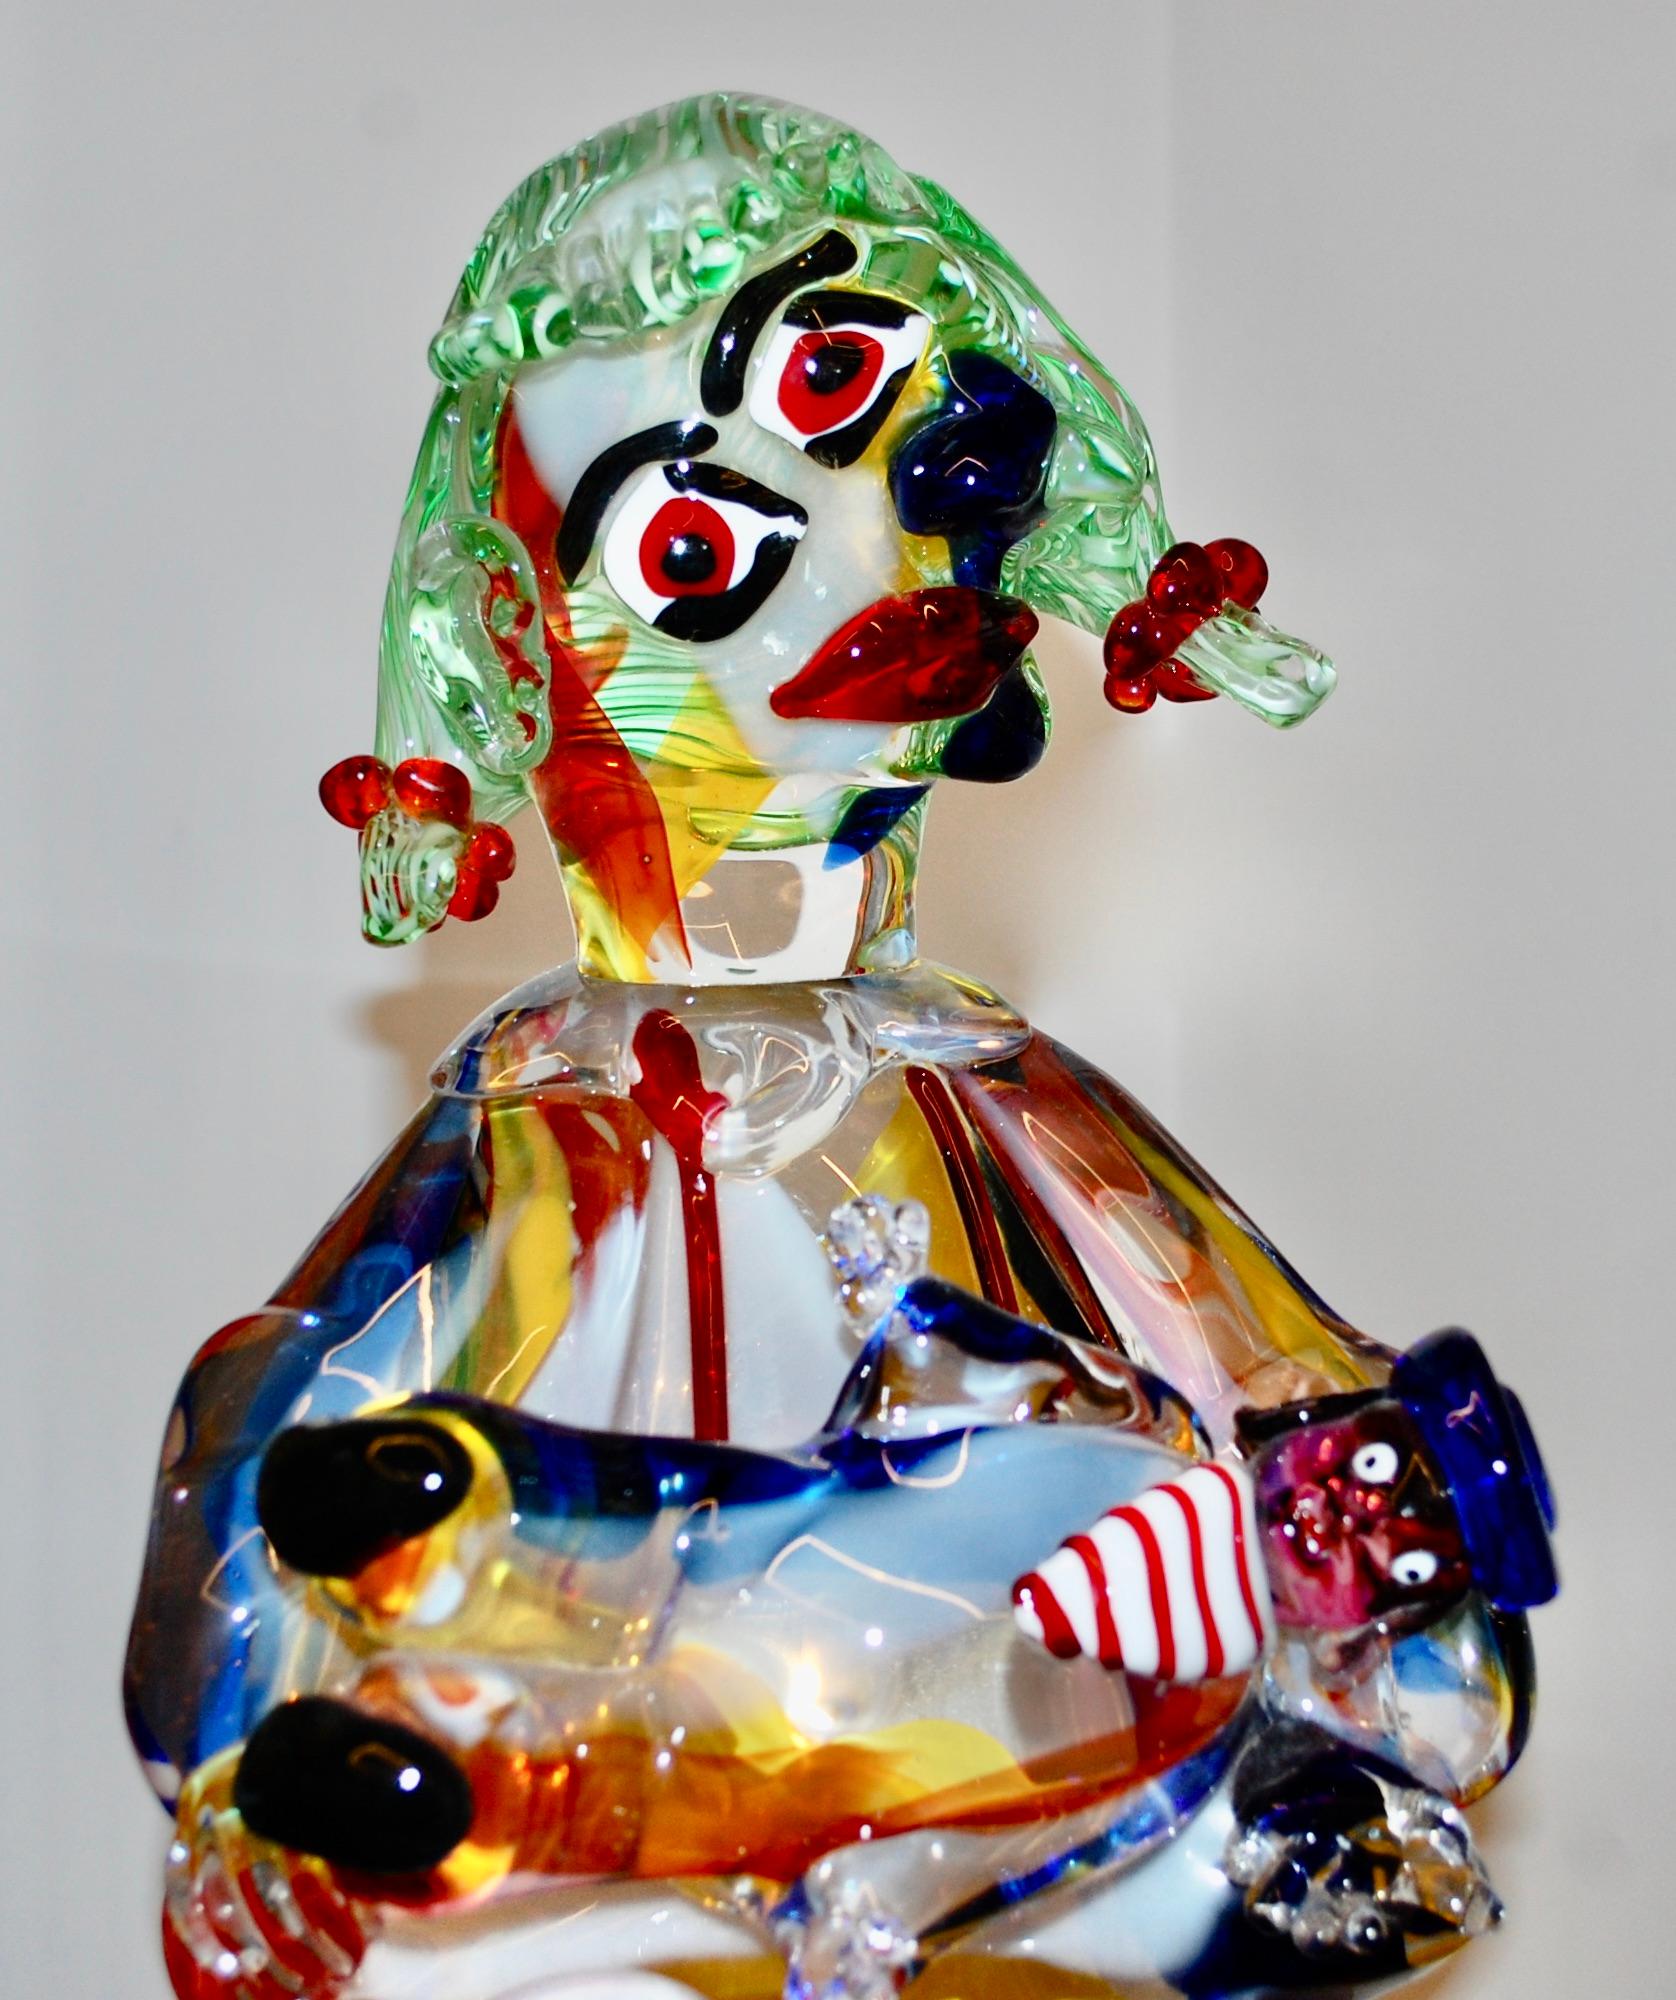 Martenita-Hommage an Picasso-Muranoglas-Skulptur (Expressionismus), Sculpture, von Walter Furlan